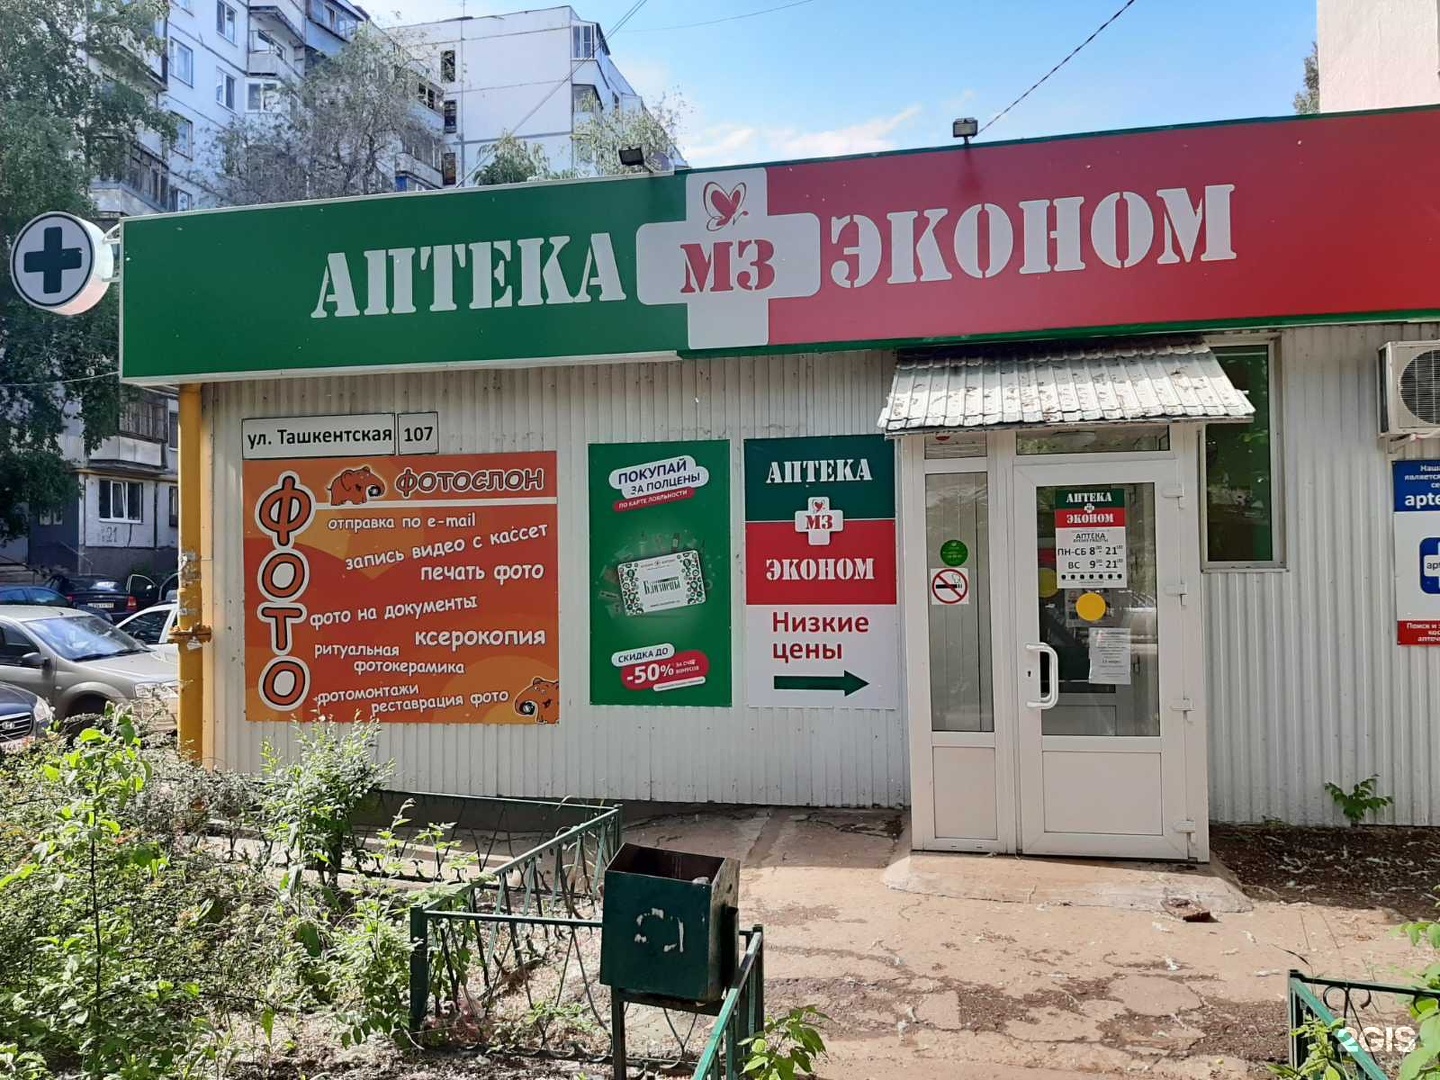 Аптека Эконом Барнаул